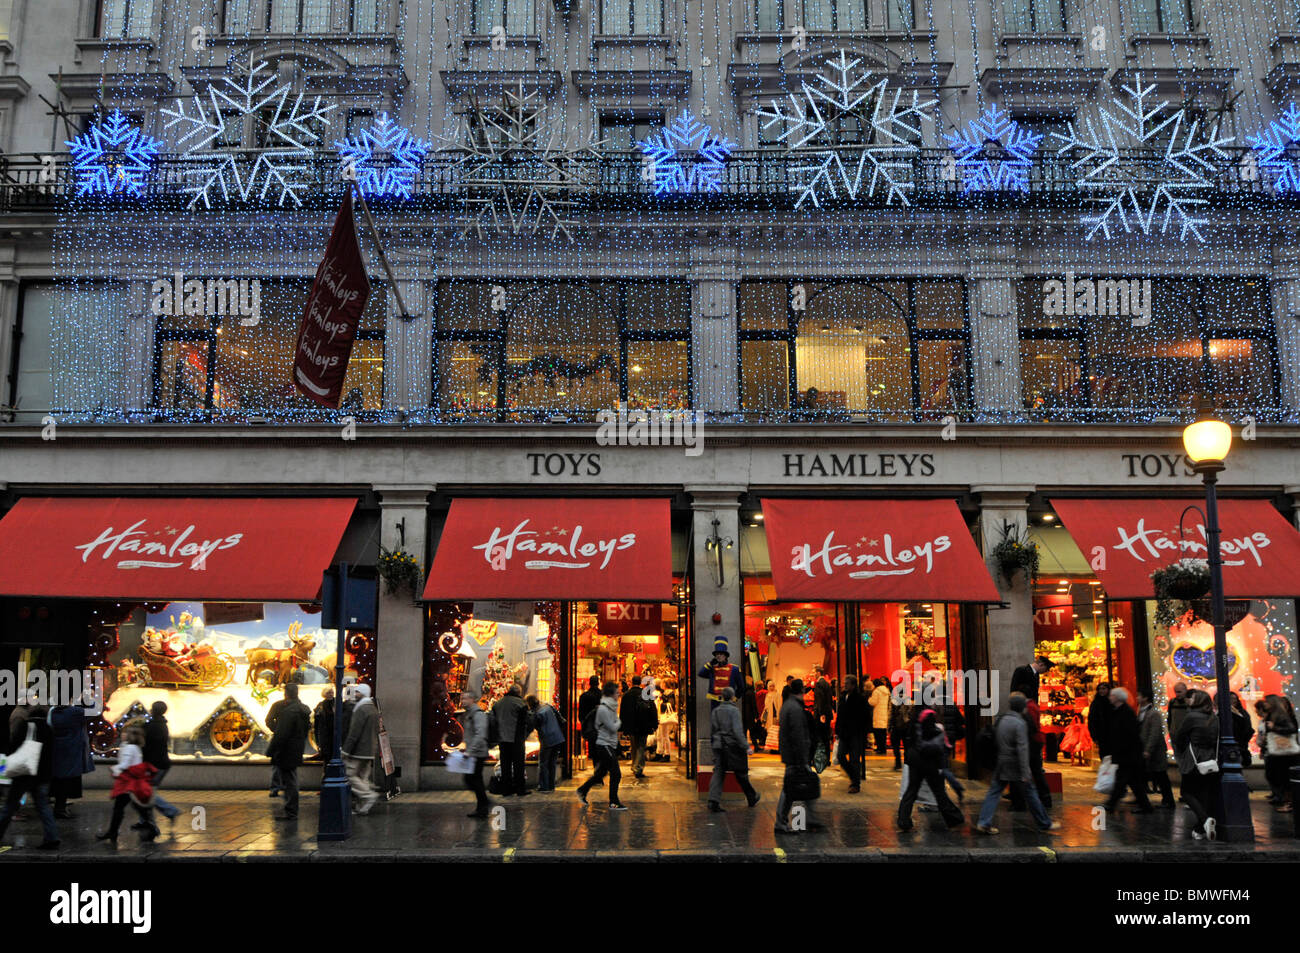 Hamleys Spielzeugladen Laden Markenlogo auf Fensterläden Winter Abenddämmerung beschäftigt mit Weihnachtseinkäufern in Regent Street West End Weihnachtsbeleuchtung Dekorationen London UK Stockfoto